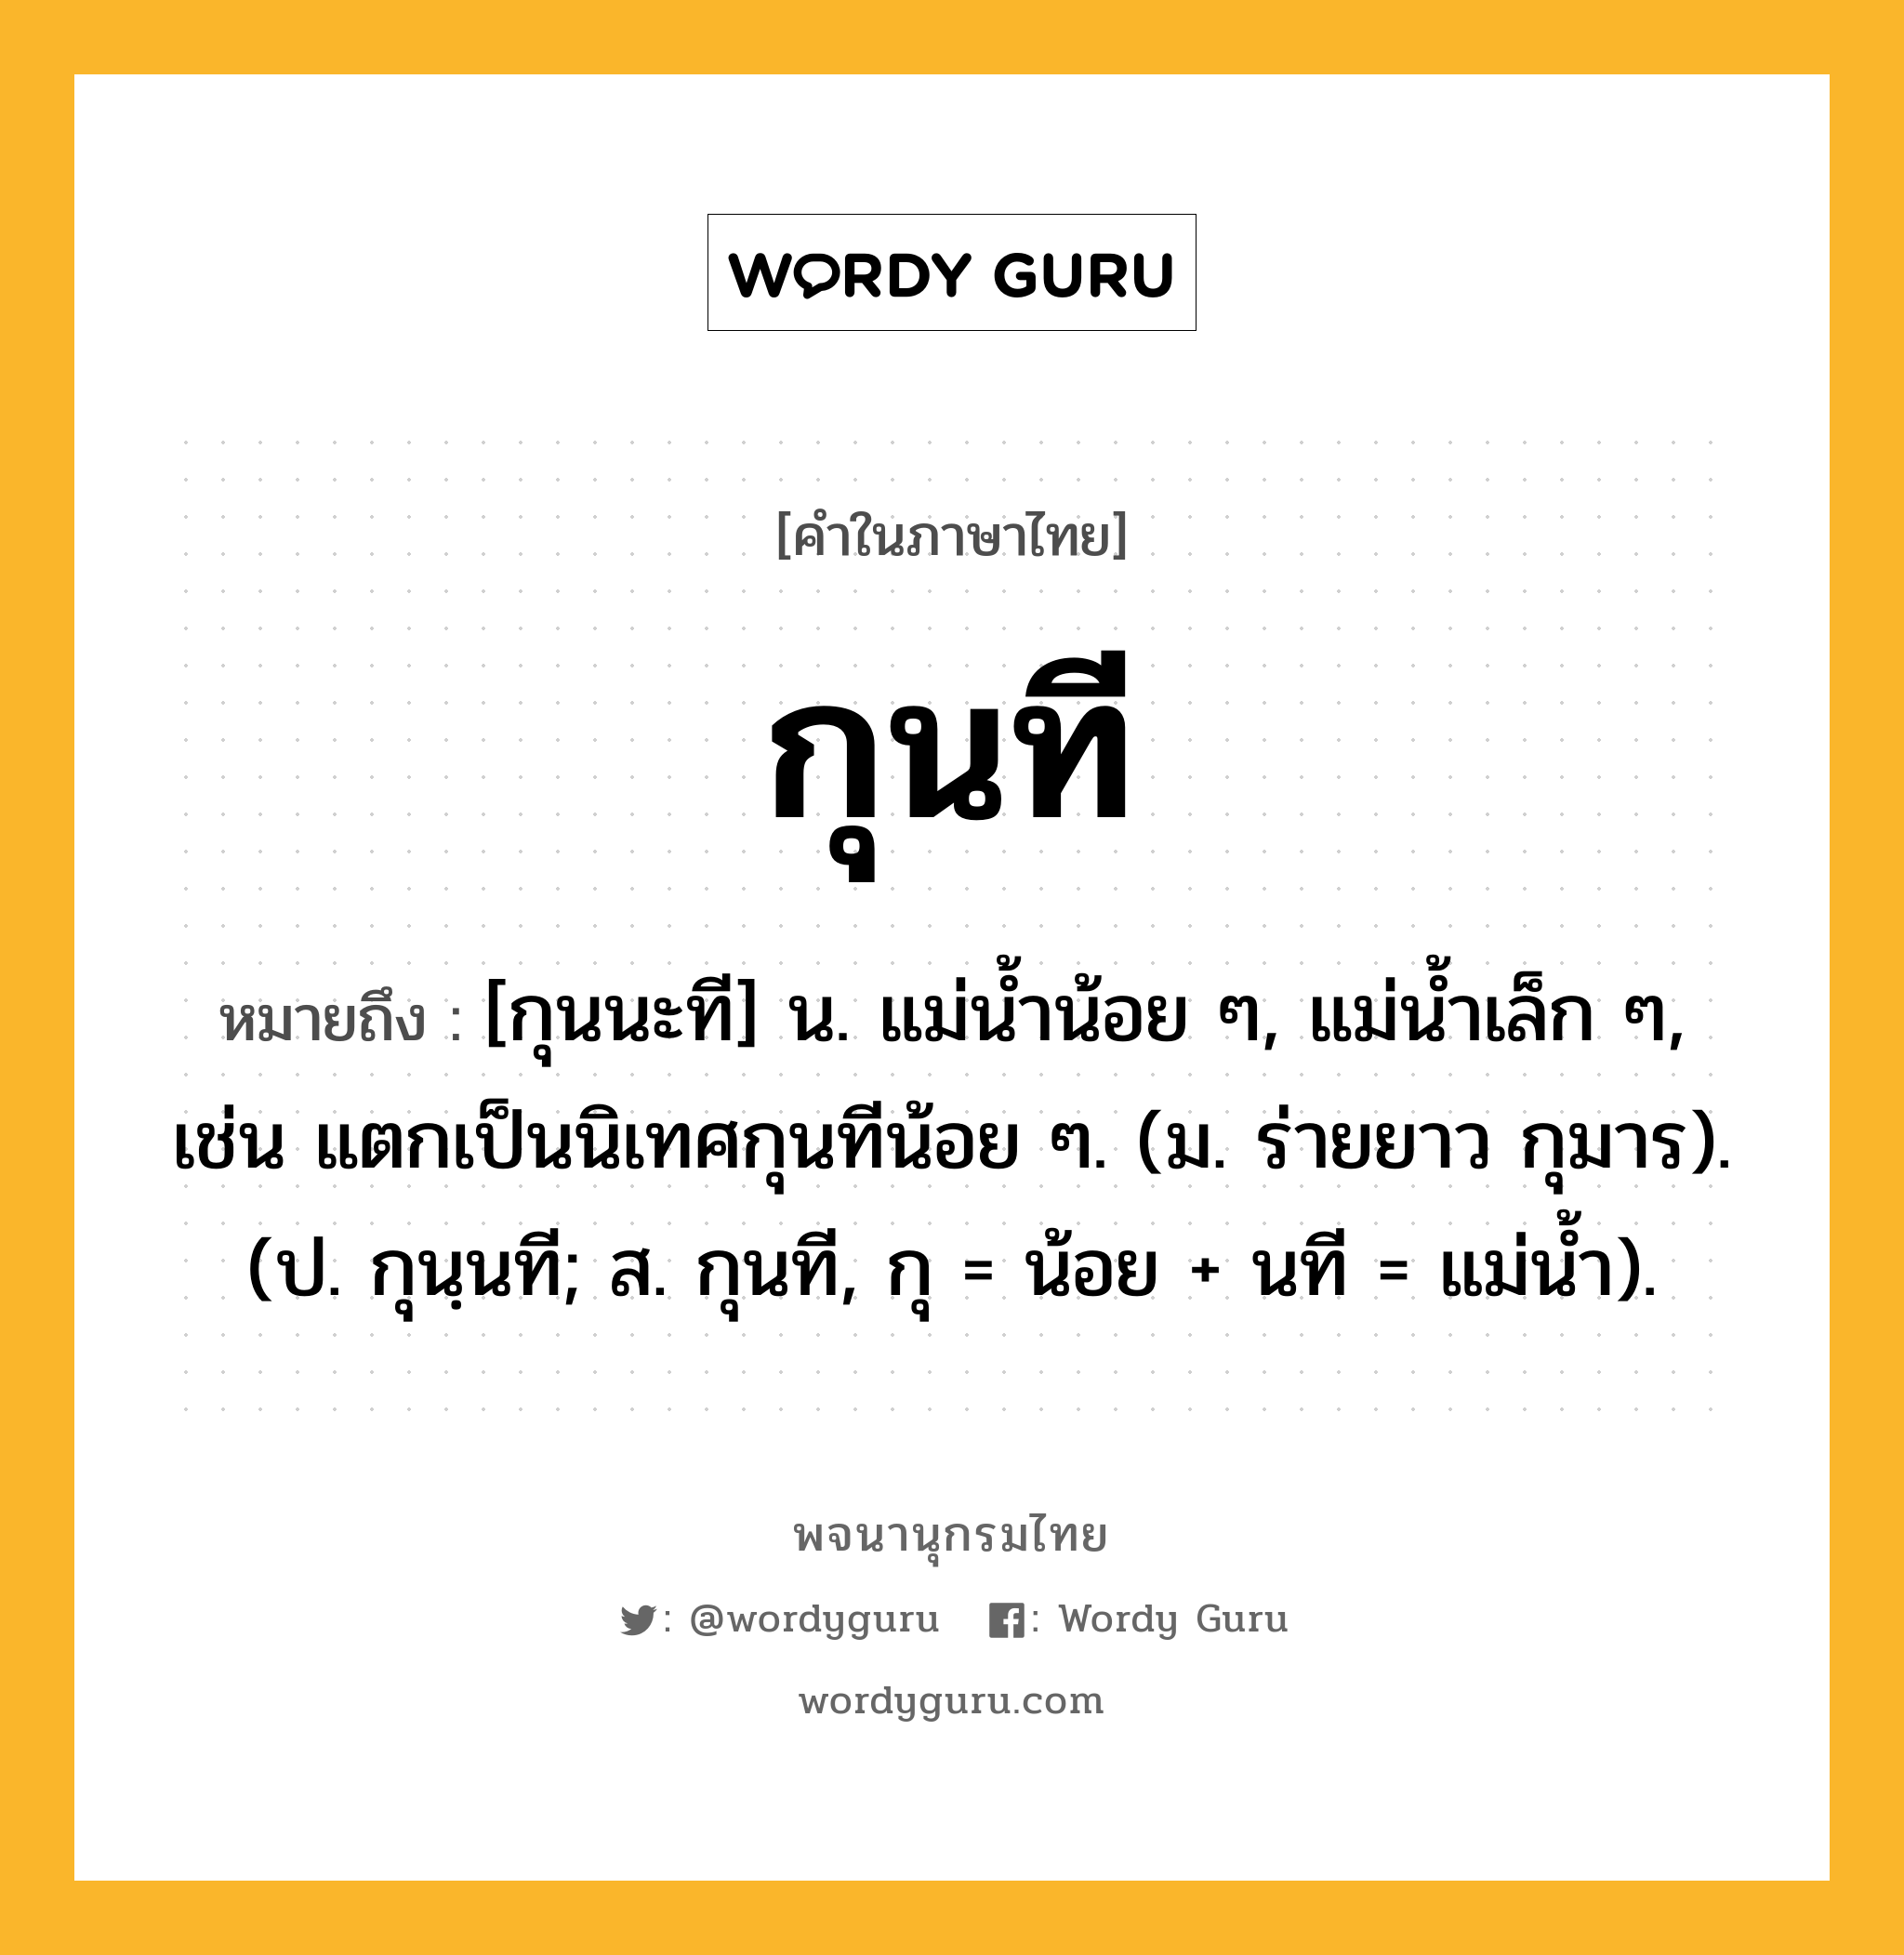 กุนที ความหมาย หมายถึงอะไร?, คำในภาษาไทย กุนที หมายถึง [กุนนะที] น. แม่นํ้าน้อย ๆ, แม่นํ้าเล็ก ๆ, เช่น แตกเป็นนิเทศกุนทีน้อย ๆ. (ม. ร่ายยาว กุมาร). (ป. กุนฺนที; ส. กุนที, กุ = น้อย + นที = แม่นํ้า).